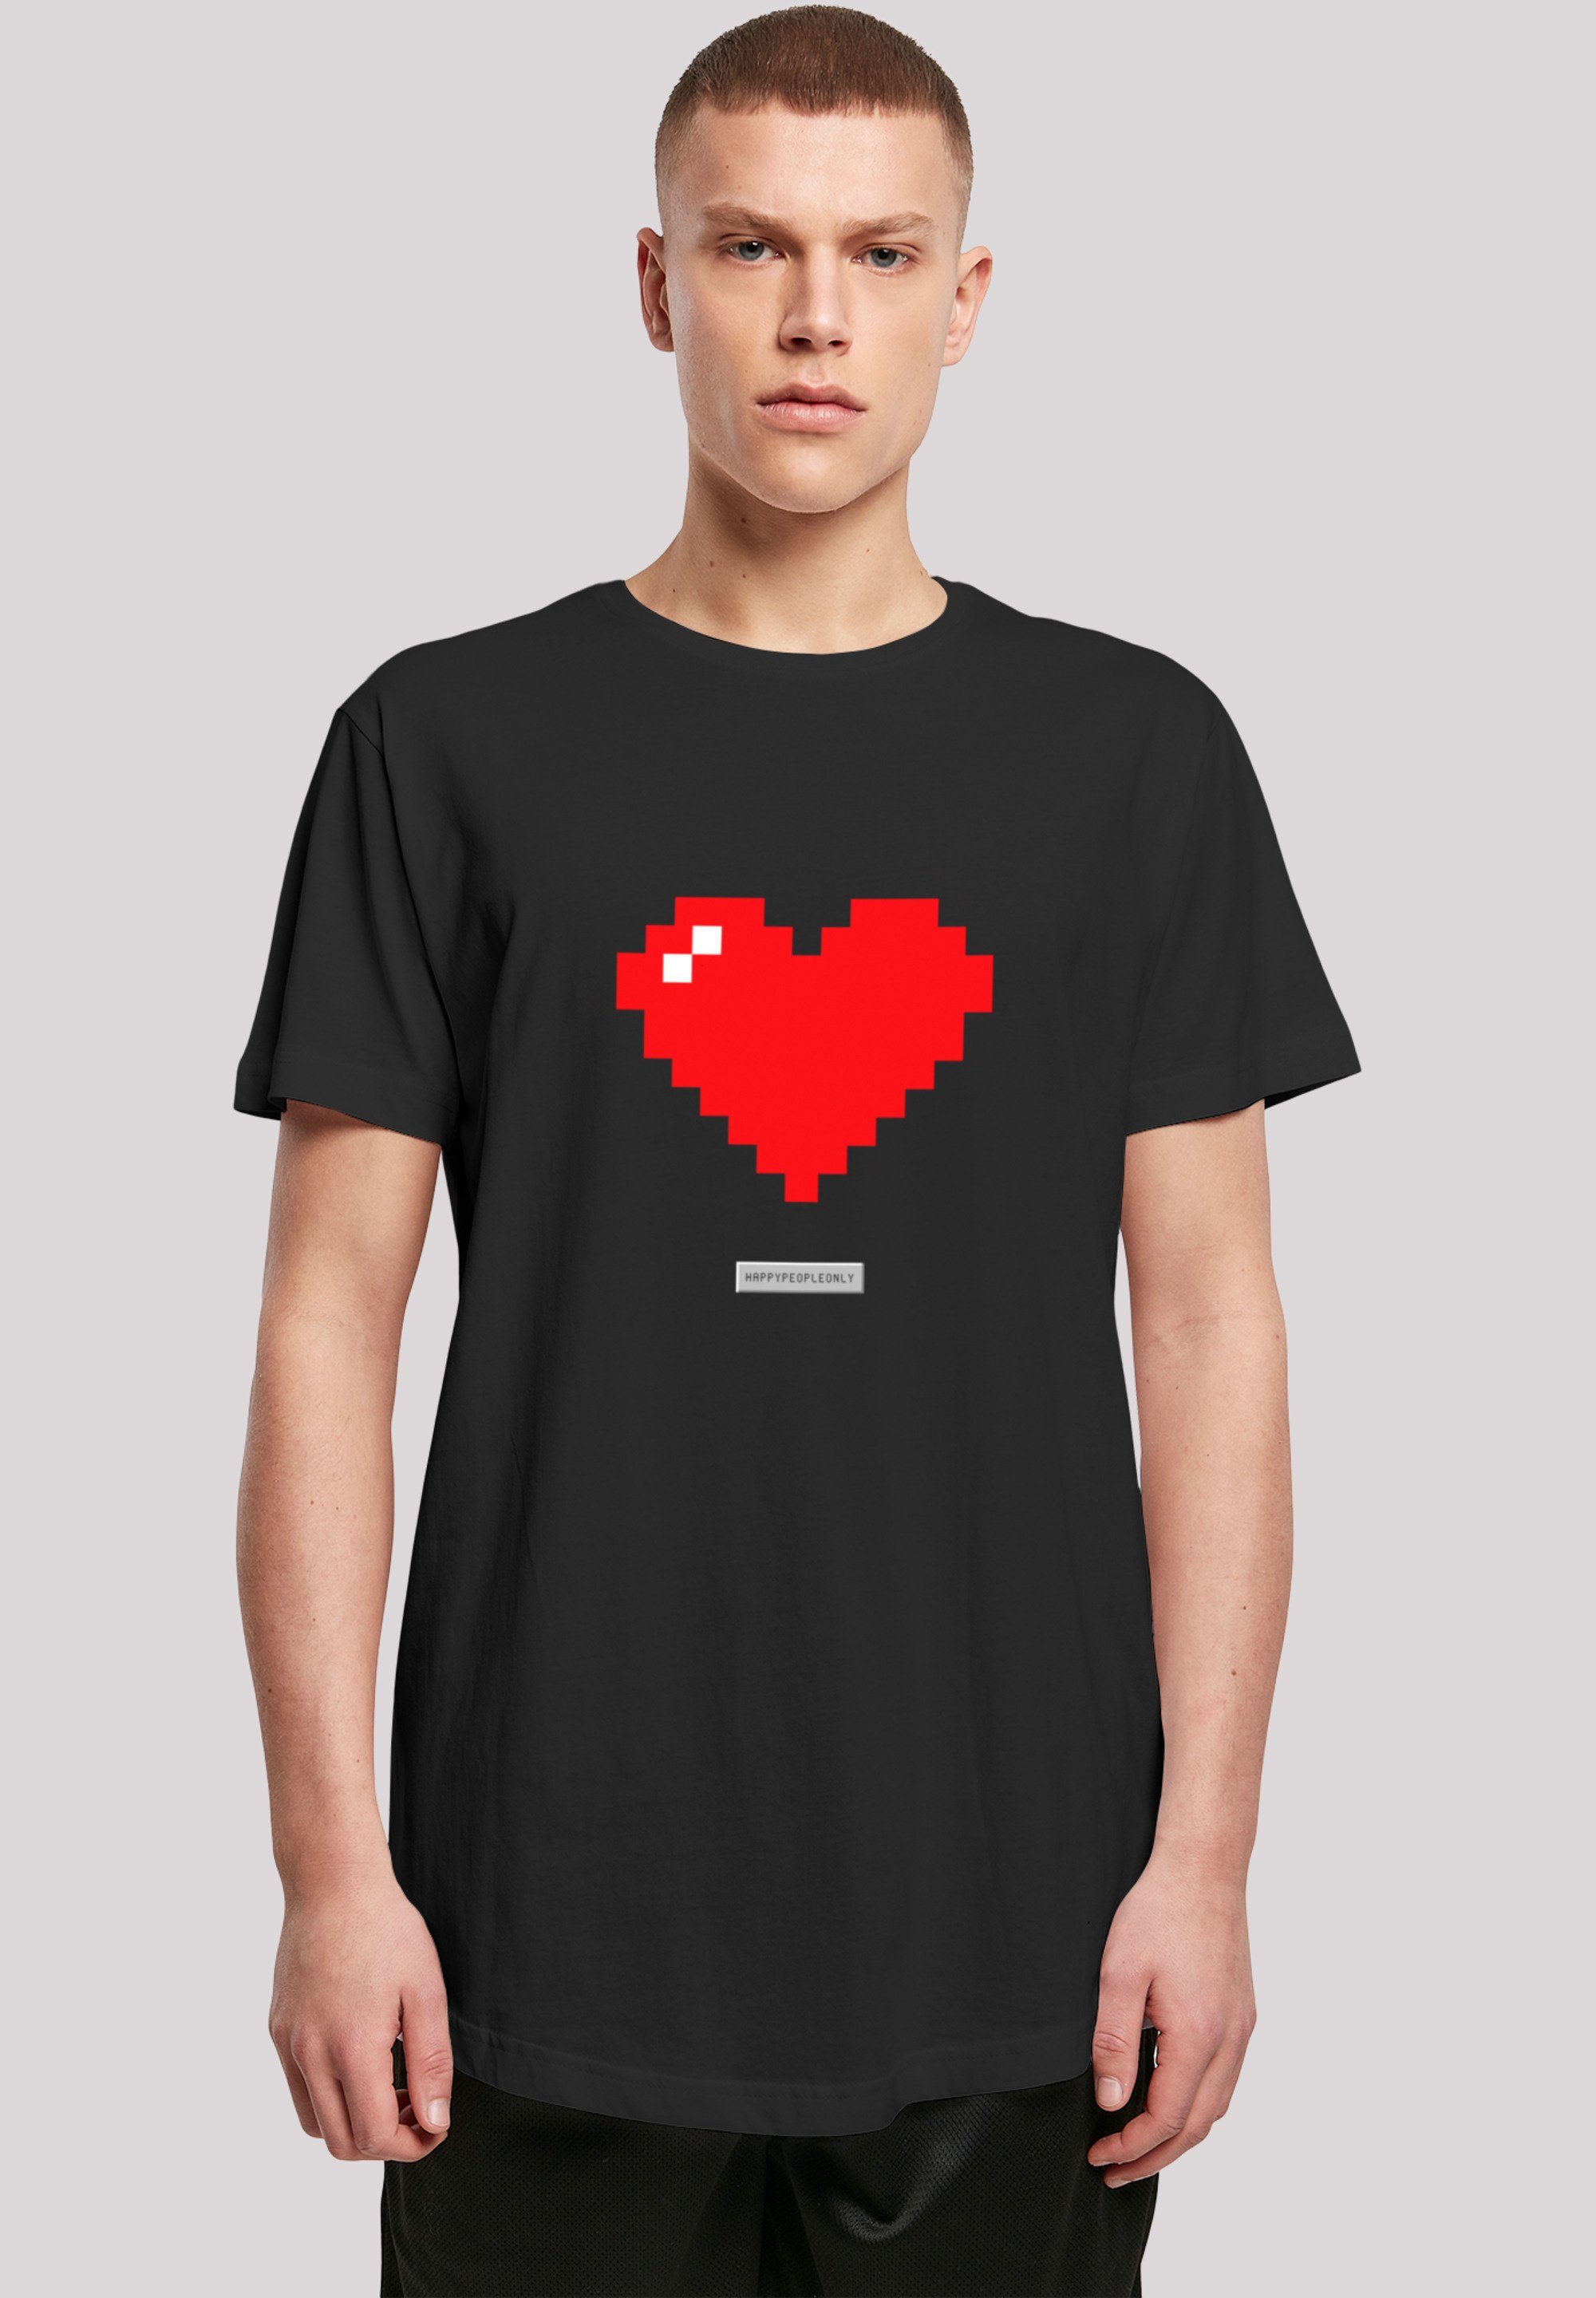 Größe Pixel Print, Model Happy und T-Shirt Good Herz Vibes Das F4NT4STIC People ist cm M 180 groß trägt